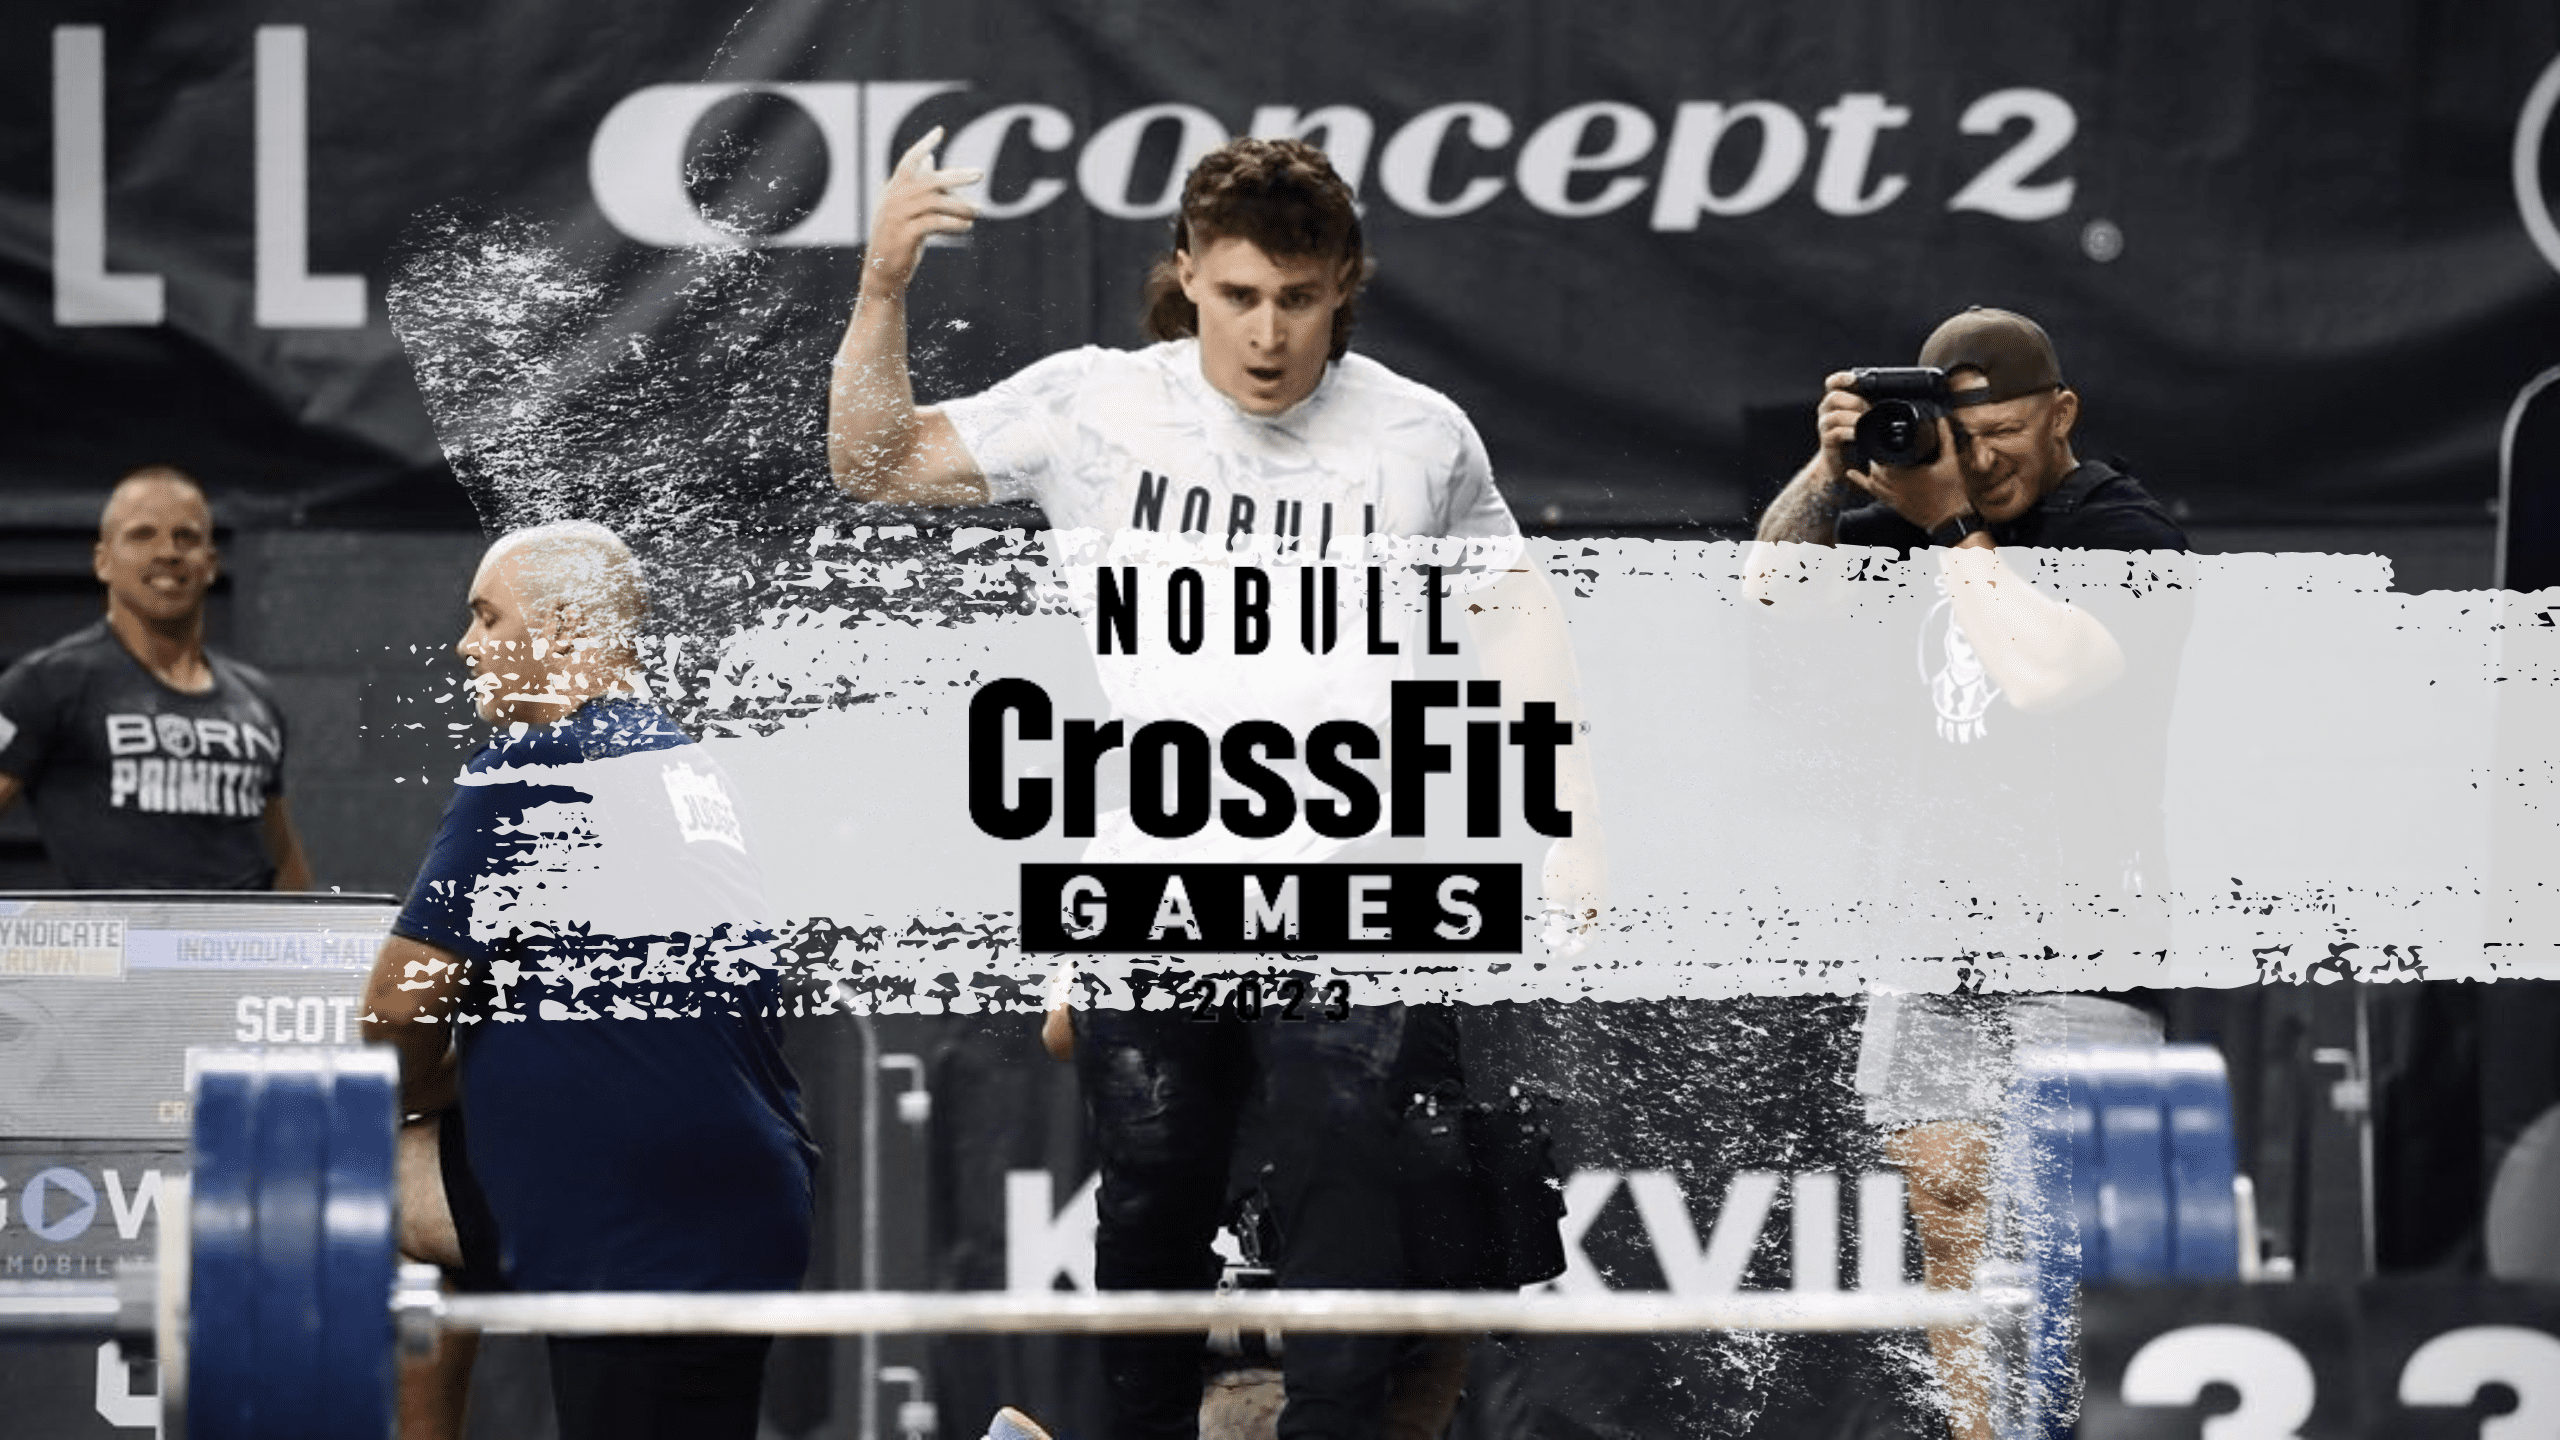 NOBULL CrossFit Games North America West Horarios Y Ver En Directo